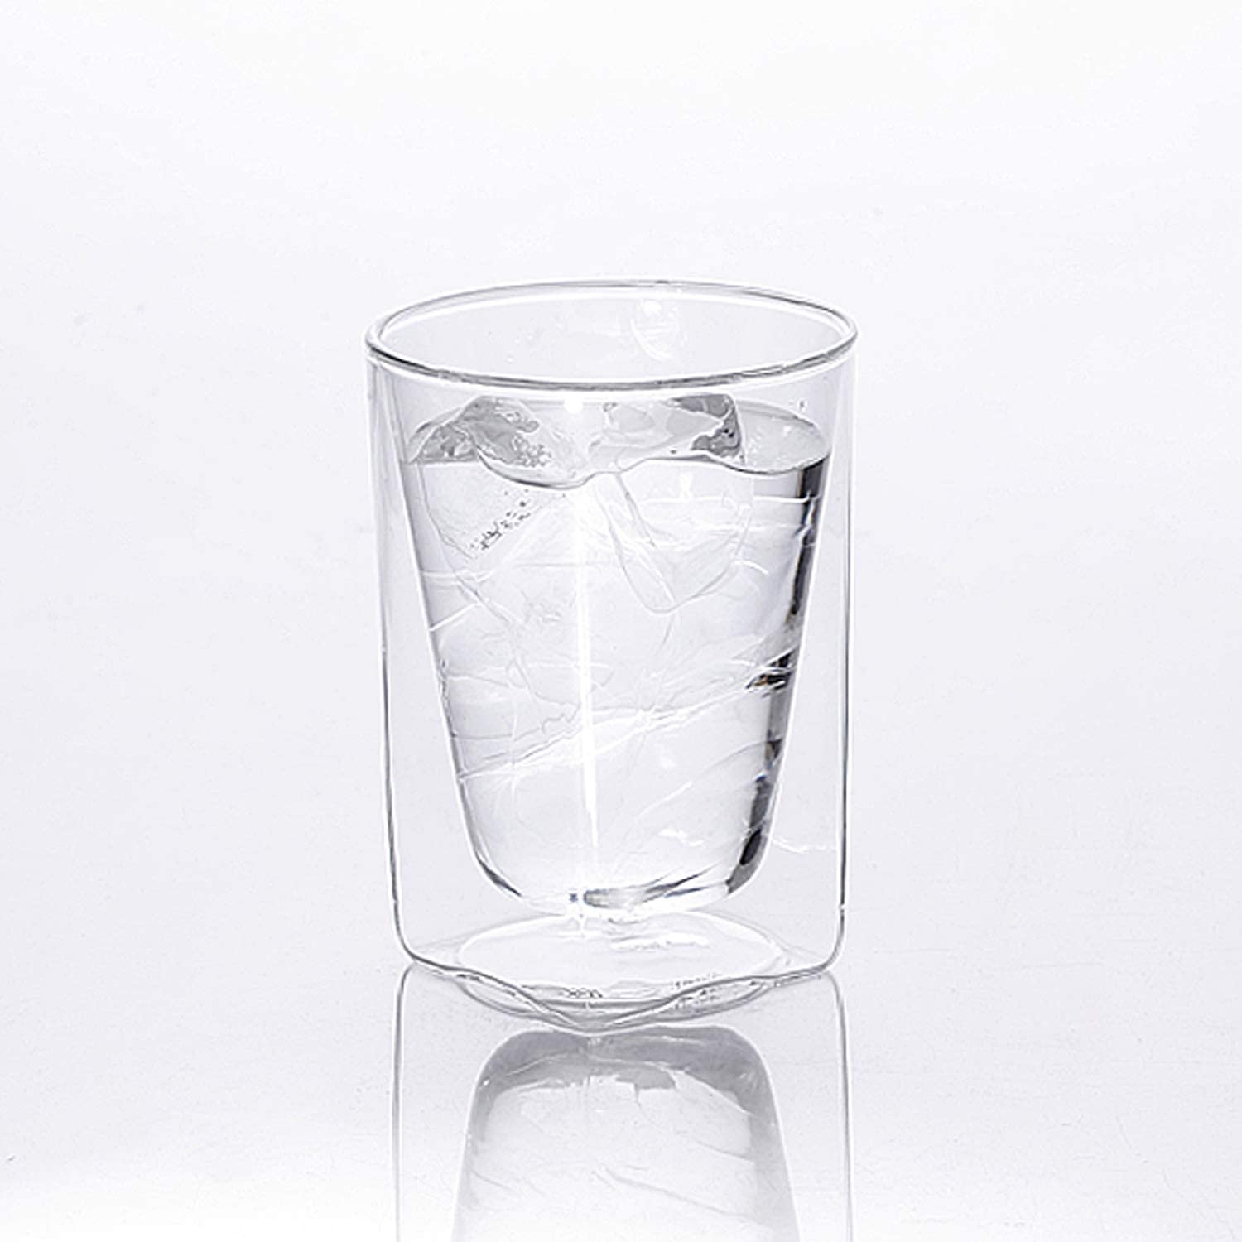 RayES(レイエス) ダブルウォールグラスの商品画像サムネ1 